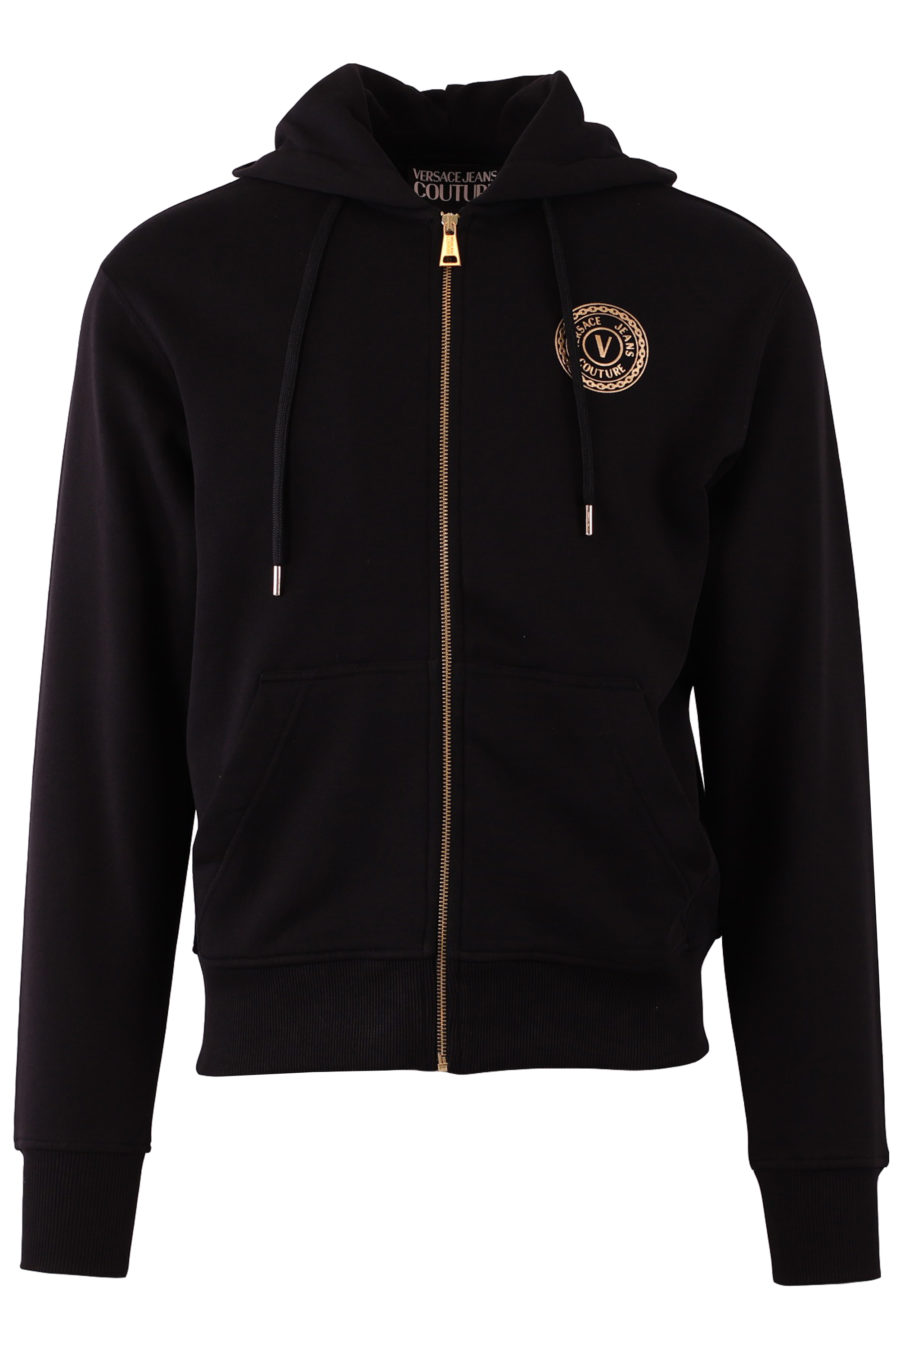 Black sweatshirt with zip and gold logo - e7253d4fb51b2af694d0425caf654ad5de1e5b92